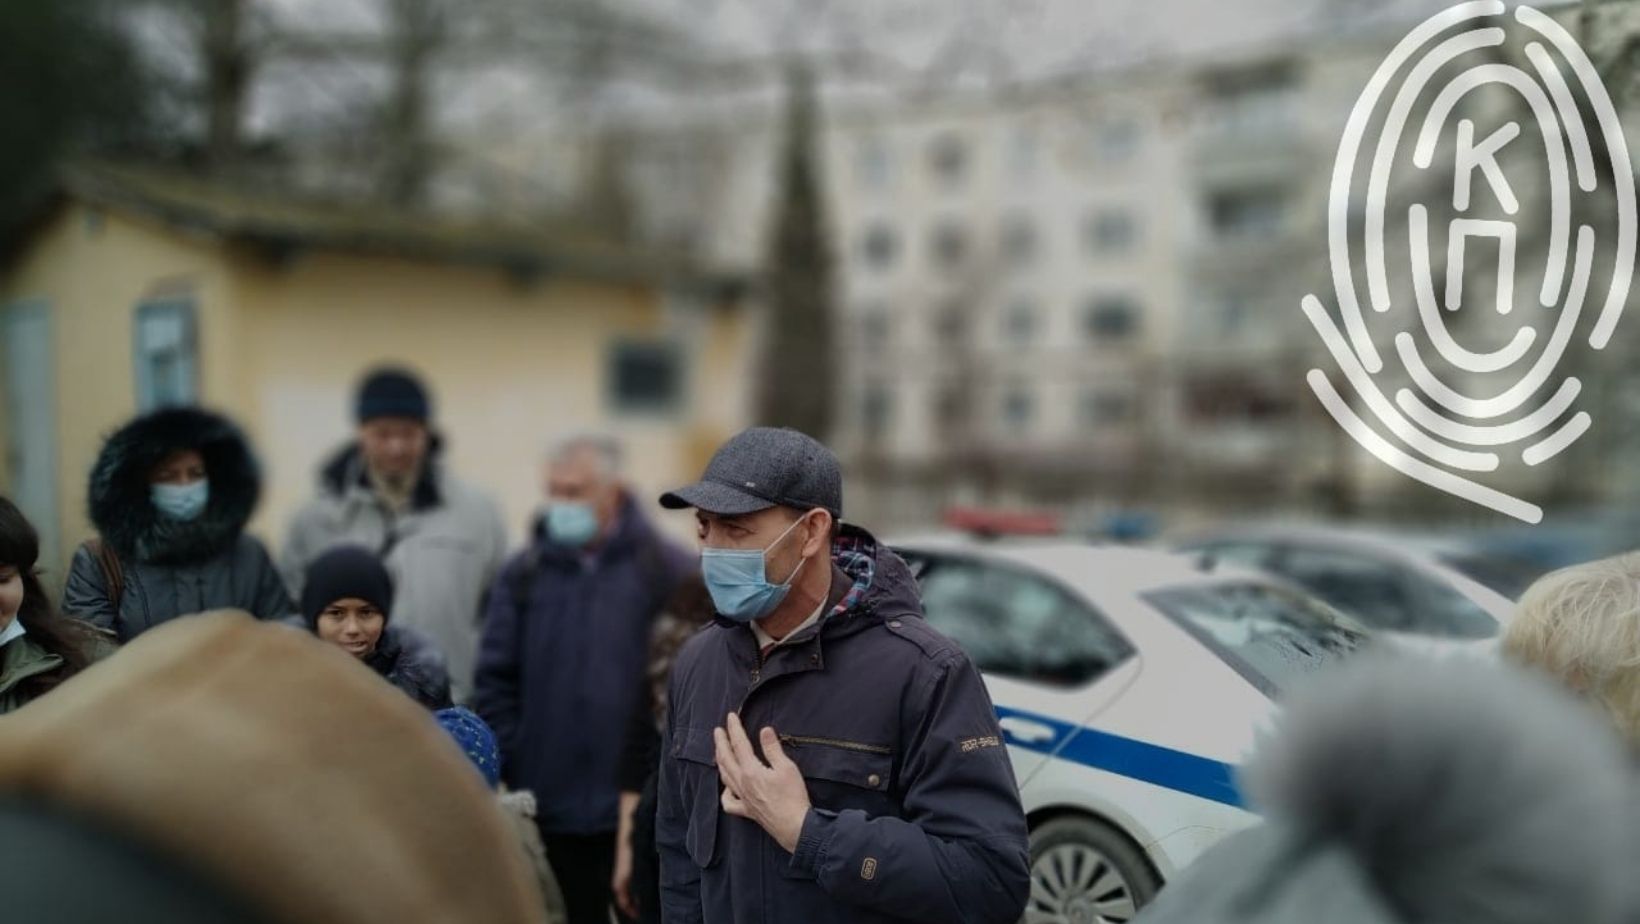 Виктор Сташевский перед оглашением приговора. 29 марта 2021 года. Фото: "Крымский Процесс"